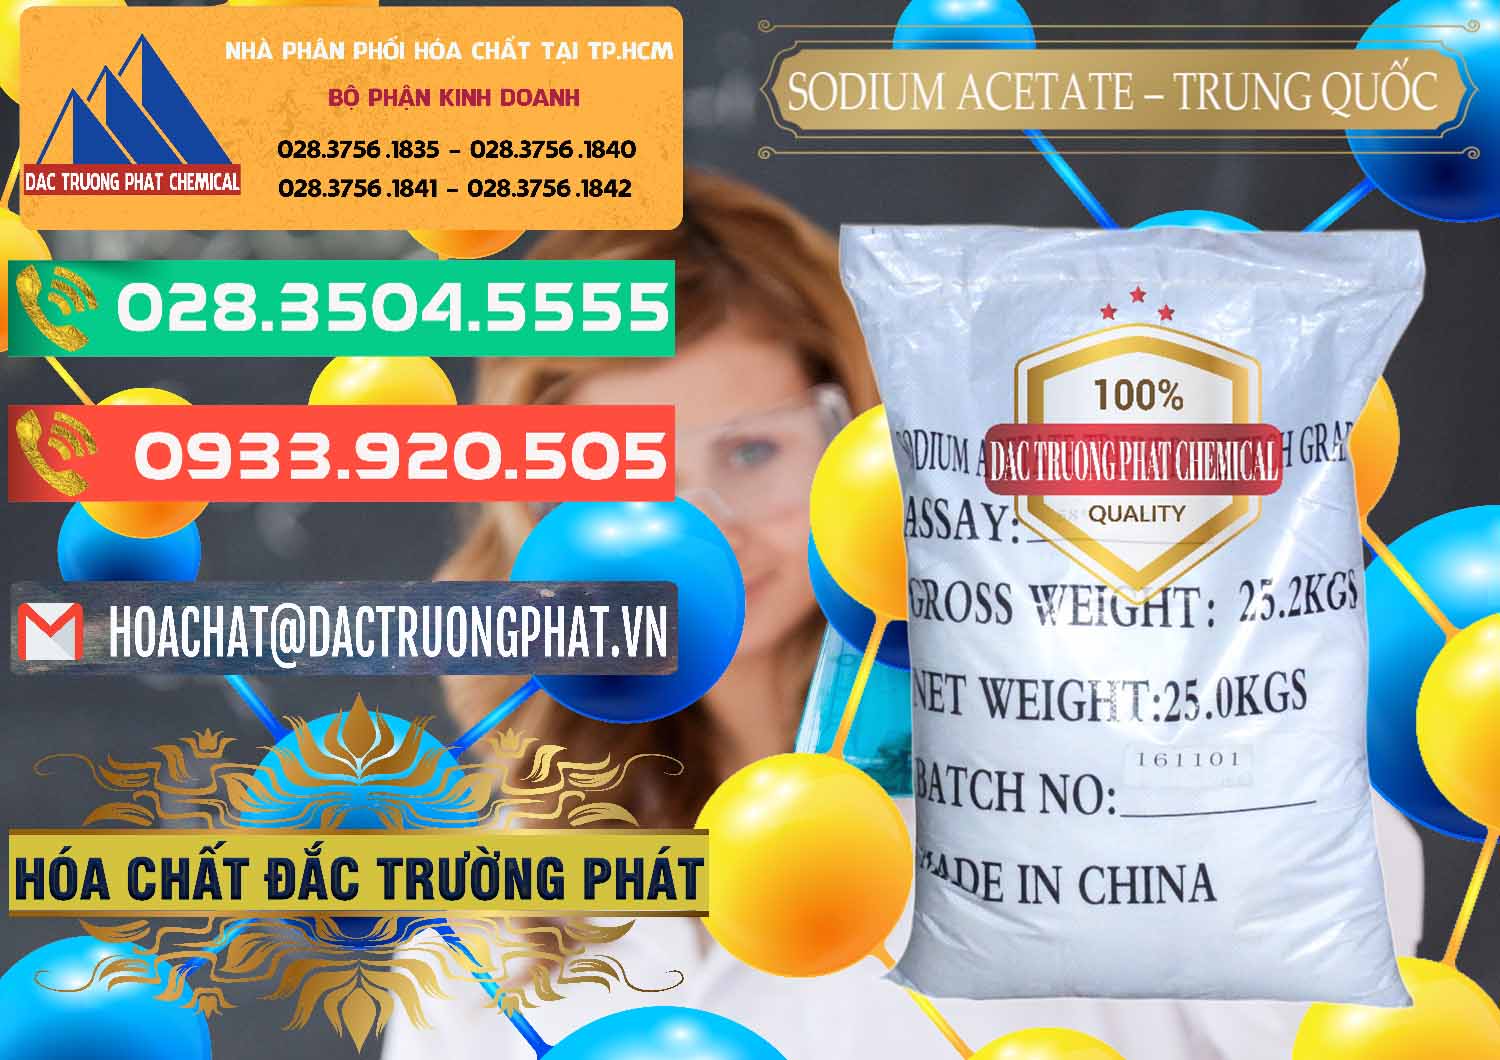 Cty chuyên nhập khẩu & bán Sodium Acetate - Natri Acetate Trung Quốc China - 0134 - Đơn vị kinh doanh _ phân phối hóa chất tại TP.HCM - congtyhoachat.com.vn